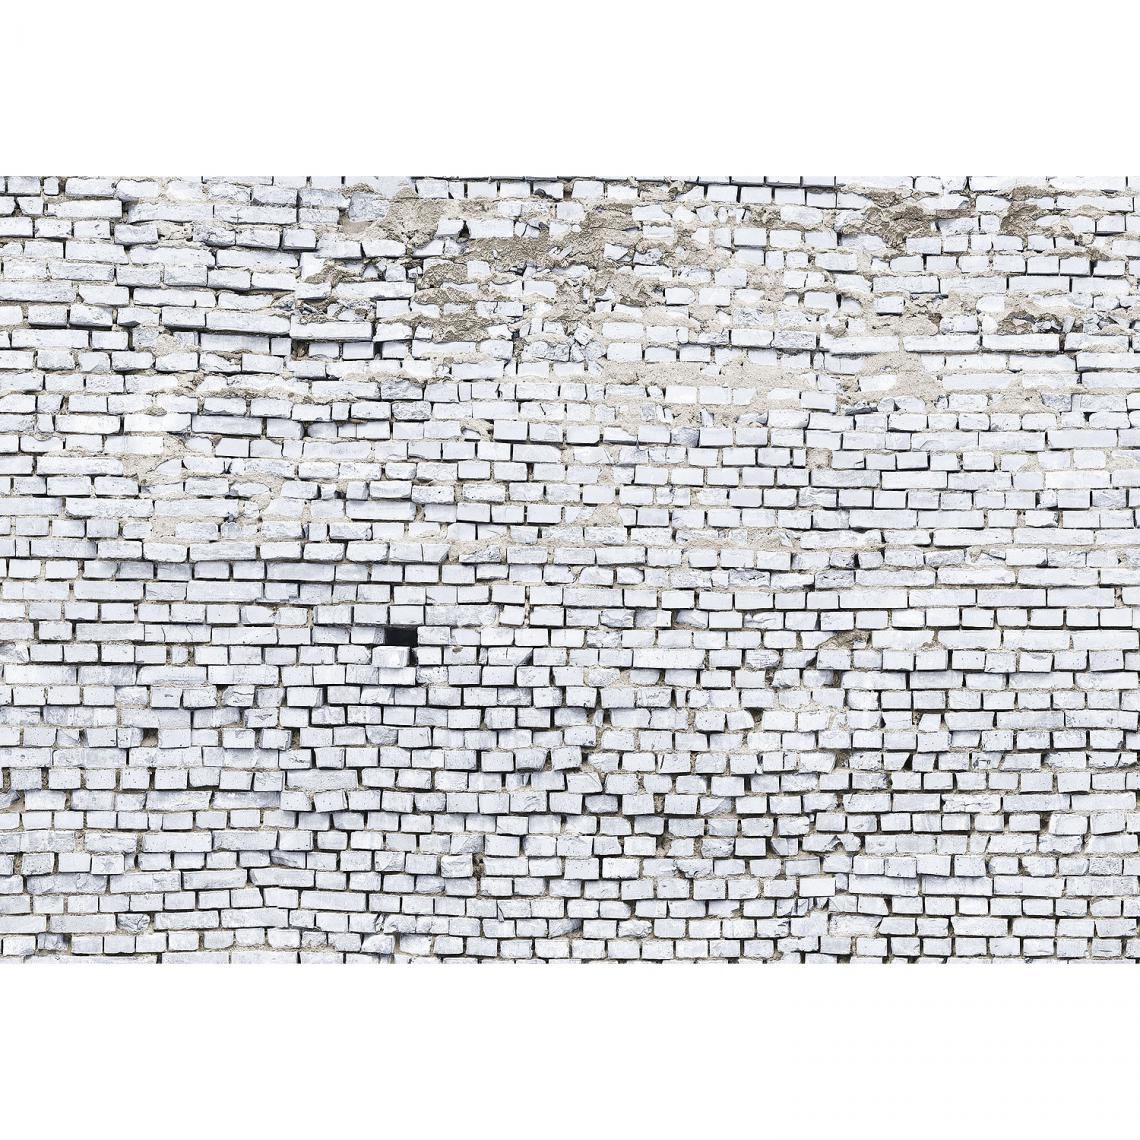 Komar - White Brick Photo murale Brique Blanche - 368 x 254 cm - Papier peint